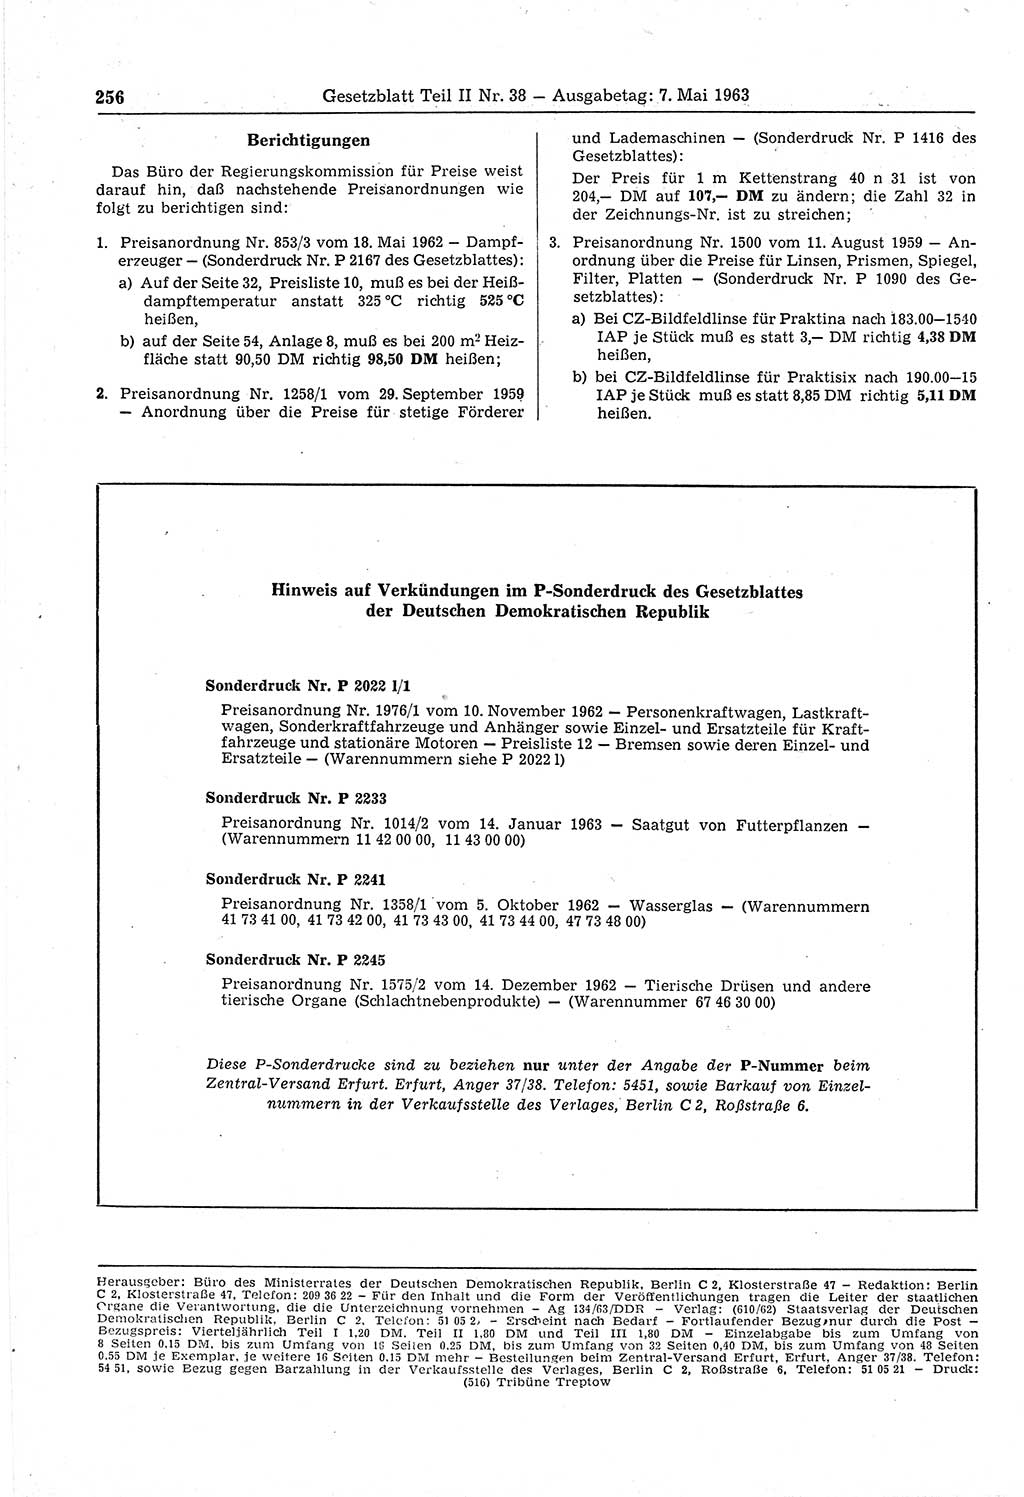 Gesetzblatt (GBl.) der Deutschen Demokratischen Republik (DDR) Teil ⅠⅠ 1963, Seite 256 (GBl. DDR ⅠⅠ 1963, S. 256)